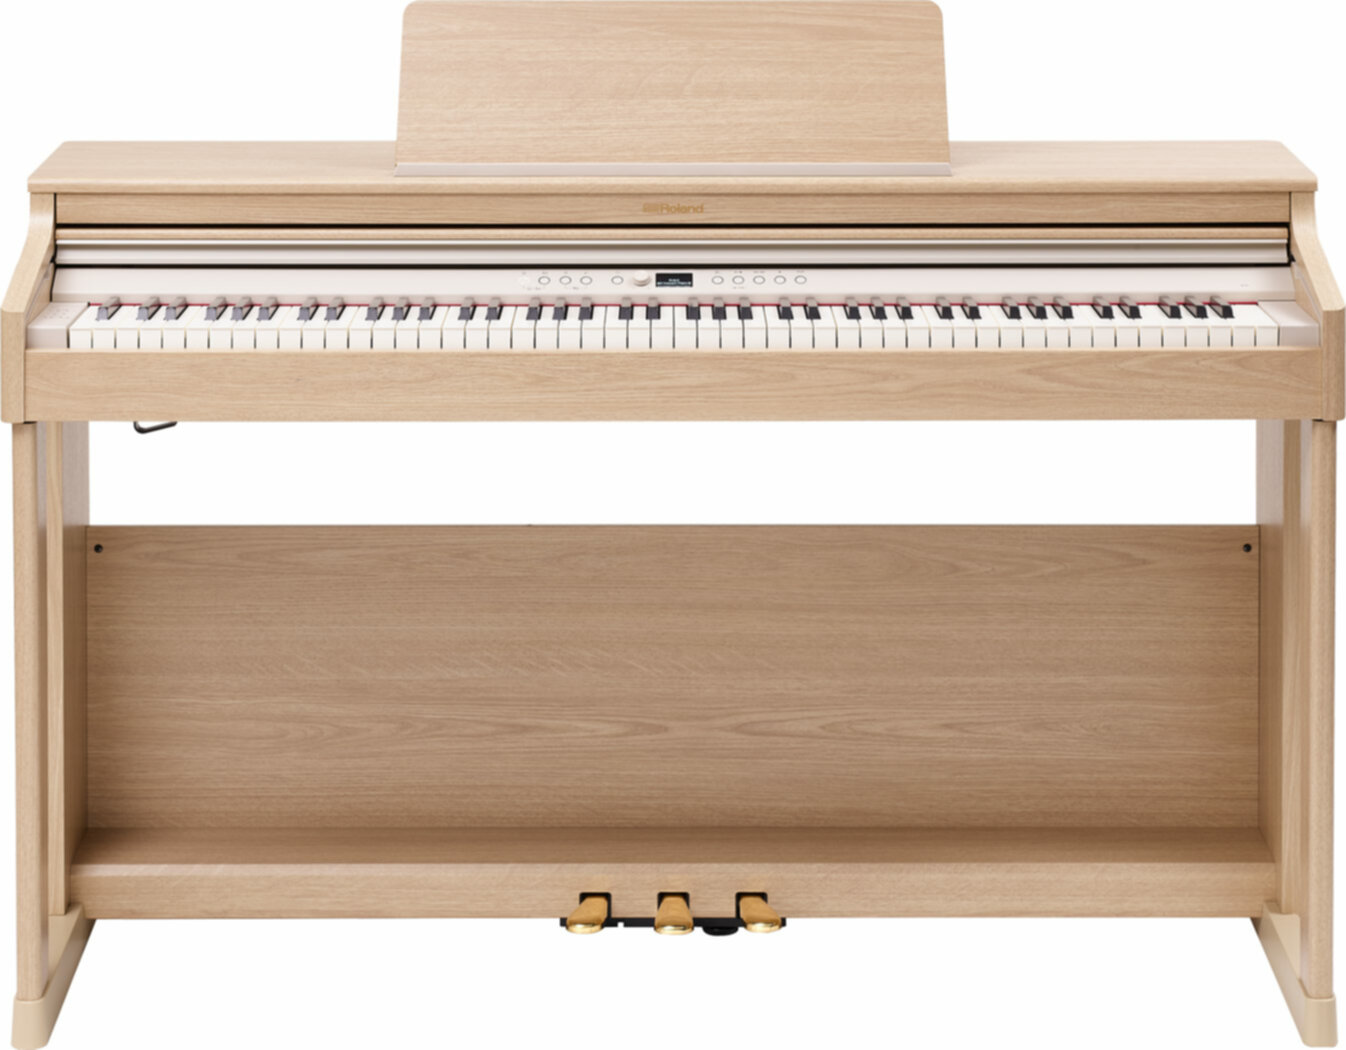 ROLAND RP701-LA Piano numérique - 1459,00€ - La musique au meilleur prix !  A Bordeaux Mérignac et Libourne.